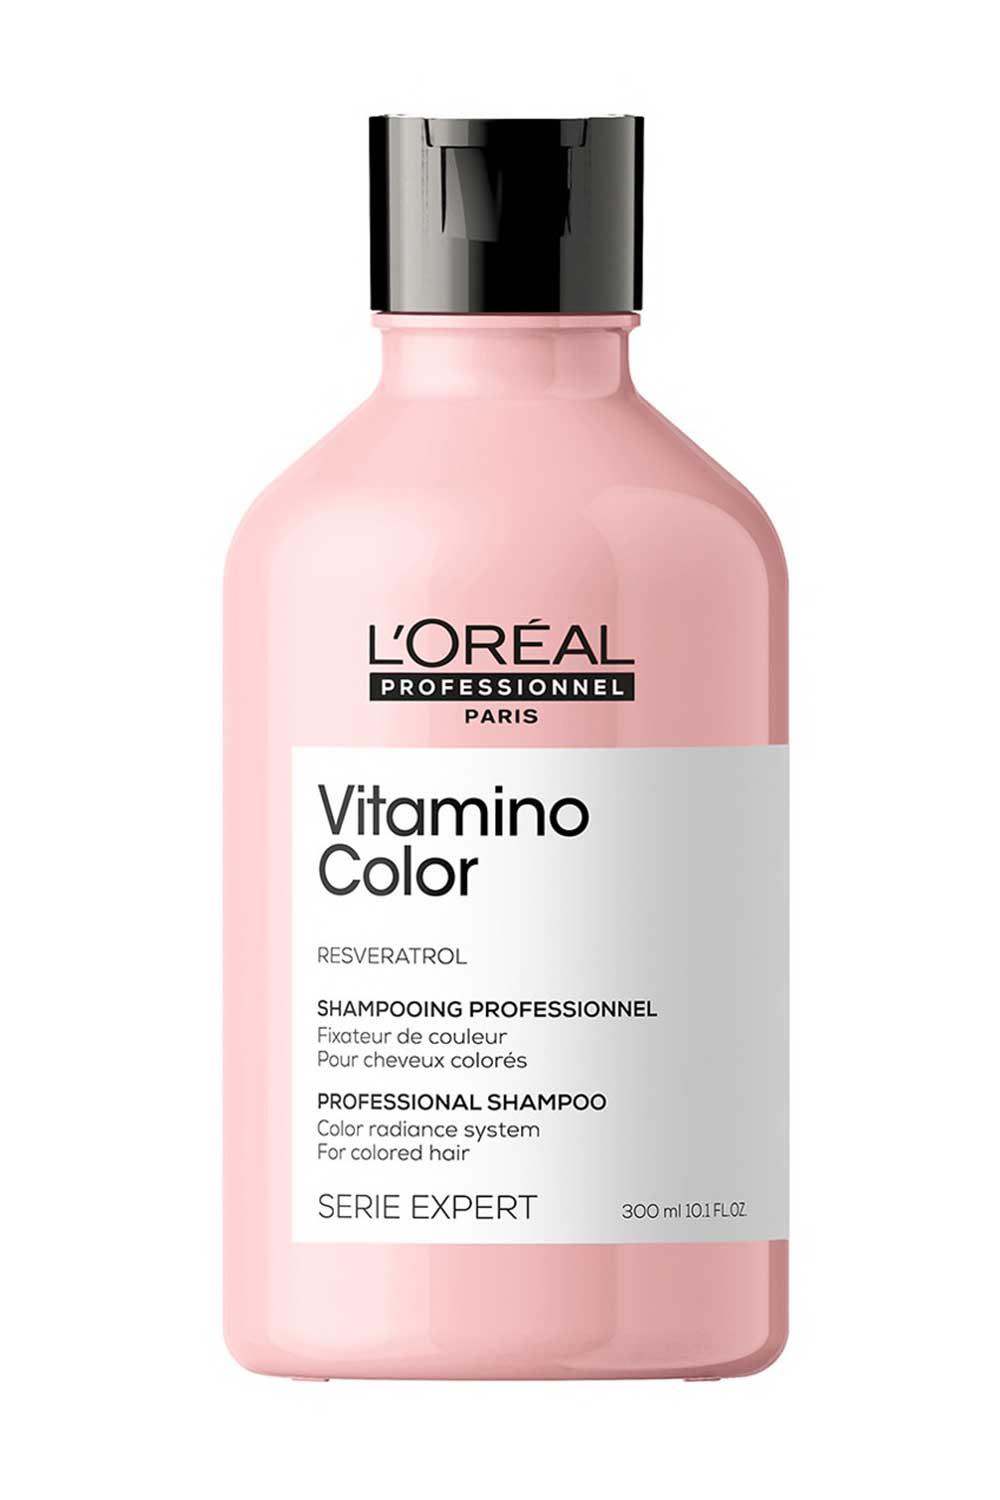 L'orealpr. Champú Vitamino Color, L'Oréal Professionnel